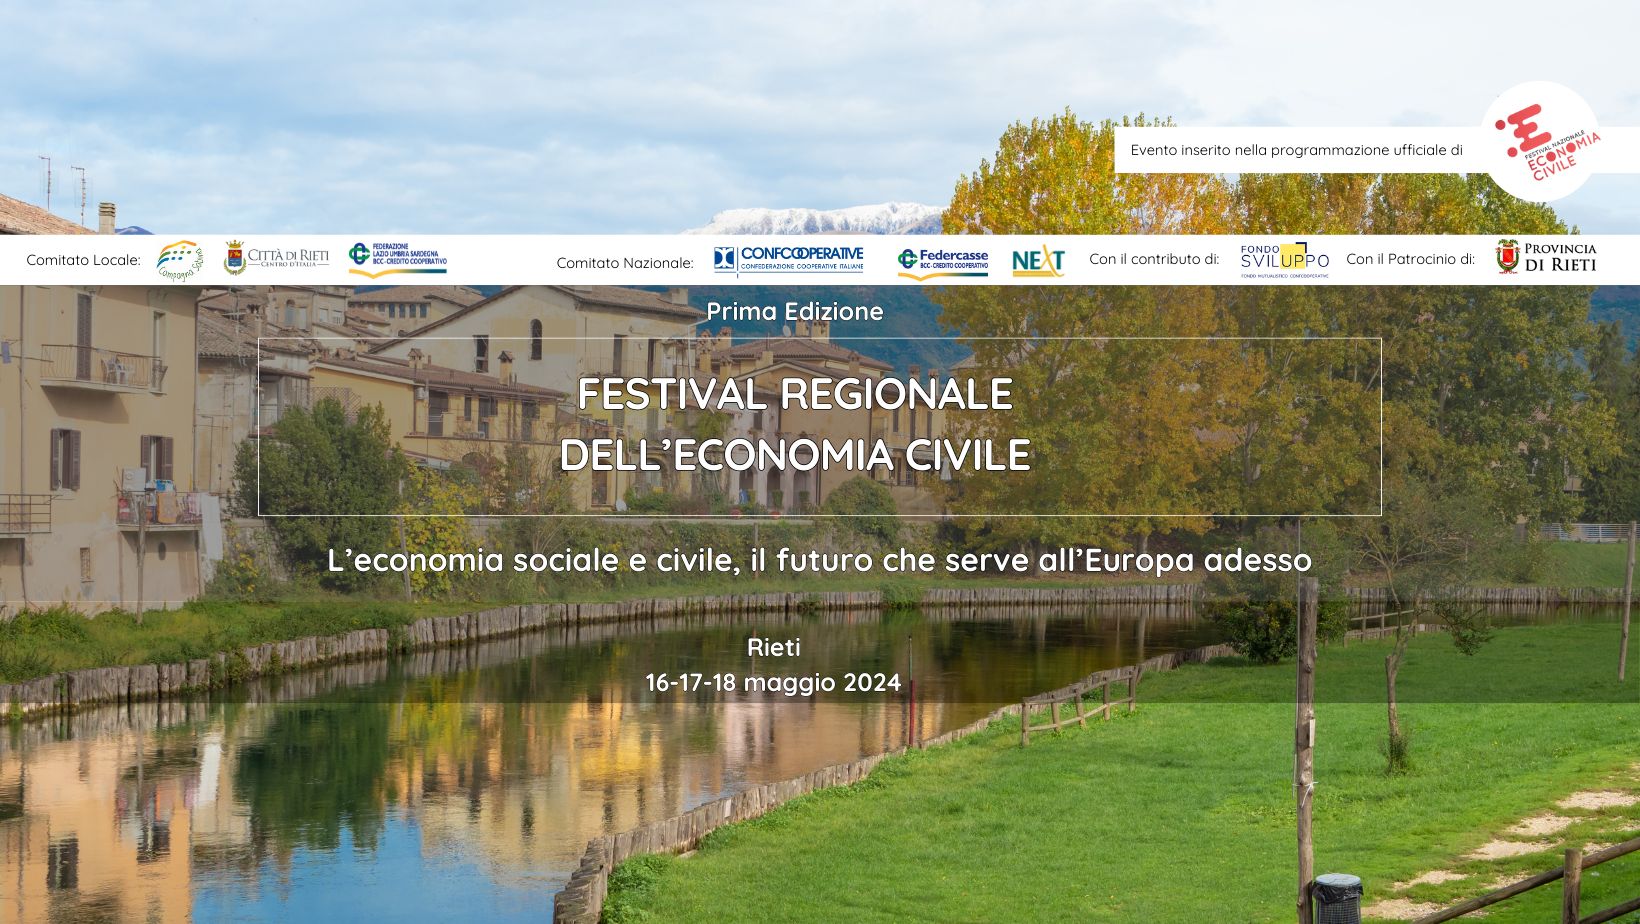 “Festival Regionale dell’Economia Civile”, Rieti 16-18 maggio 2024